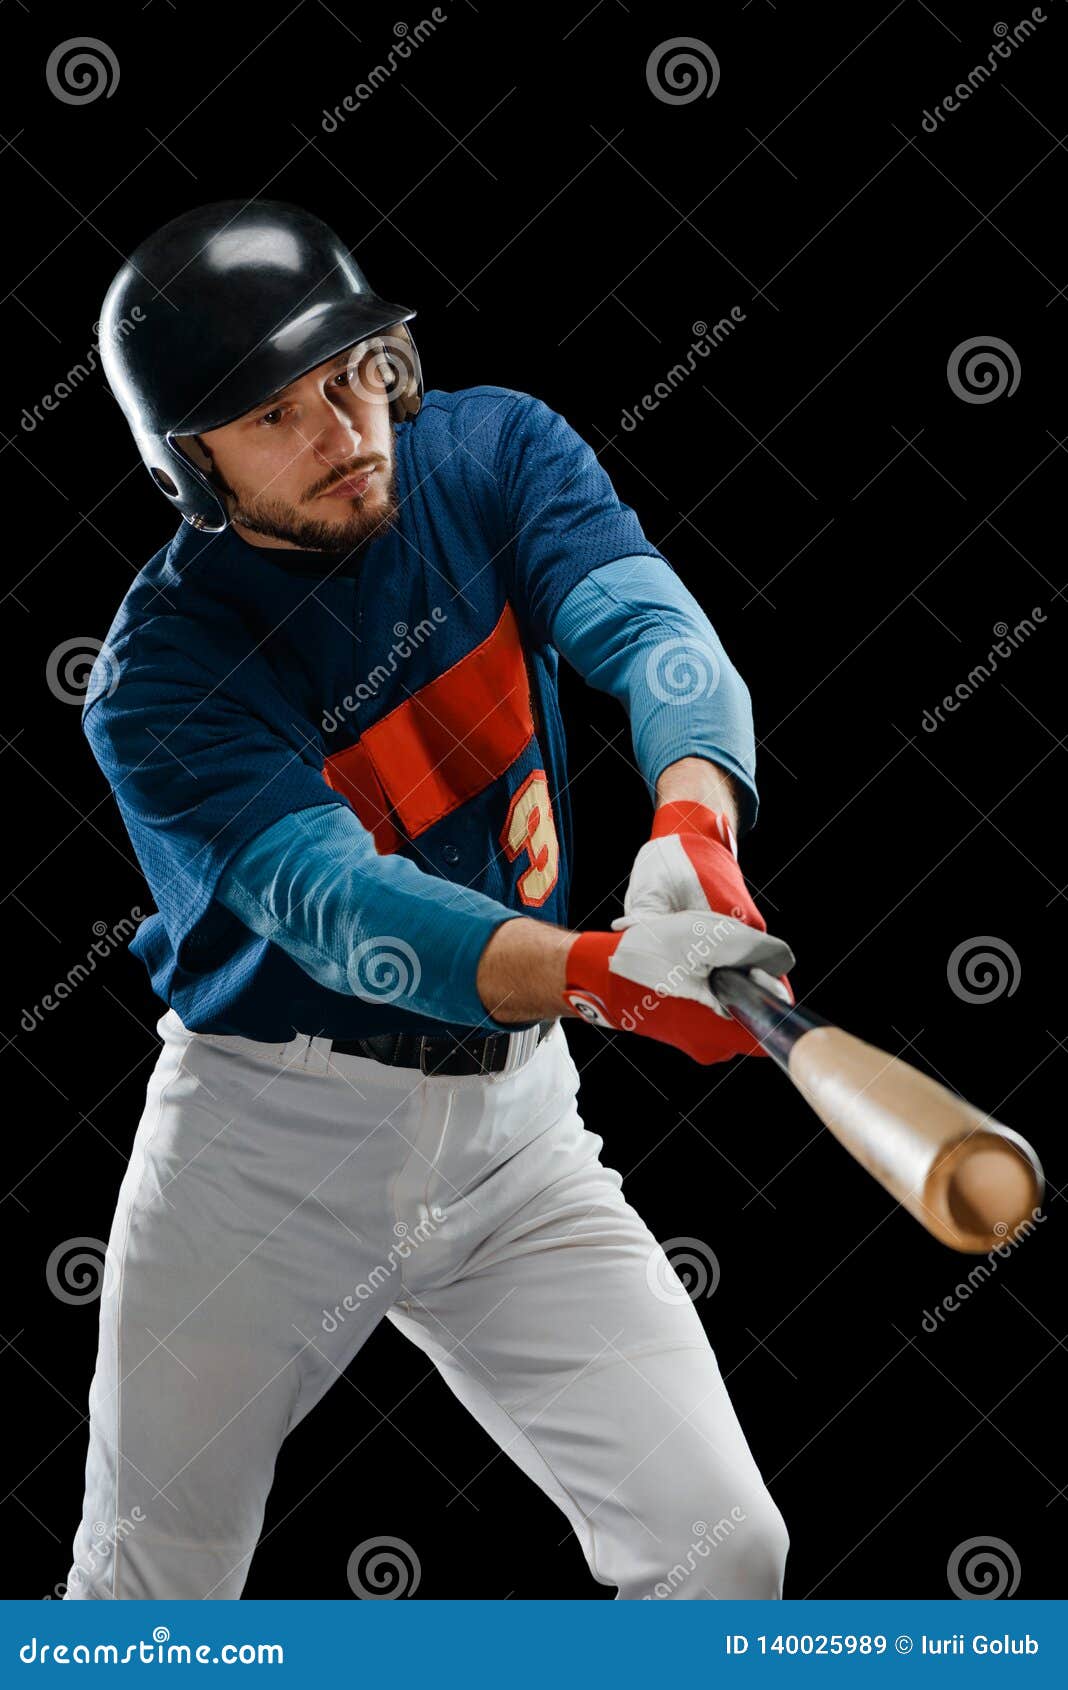 Joueur De Baseball Pratiquant Un Coup Image stock - Image du pâte, bille:  140025989